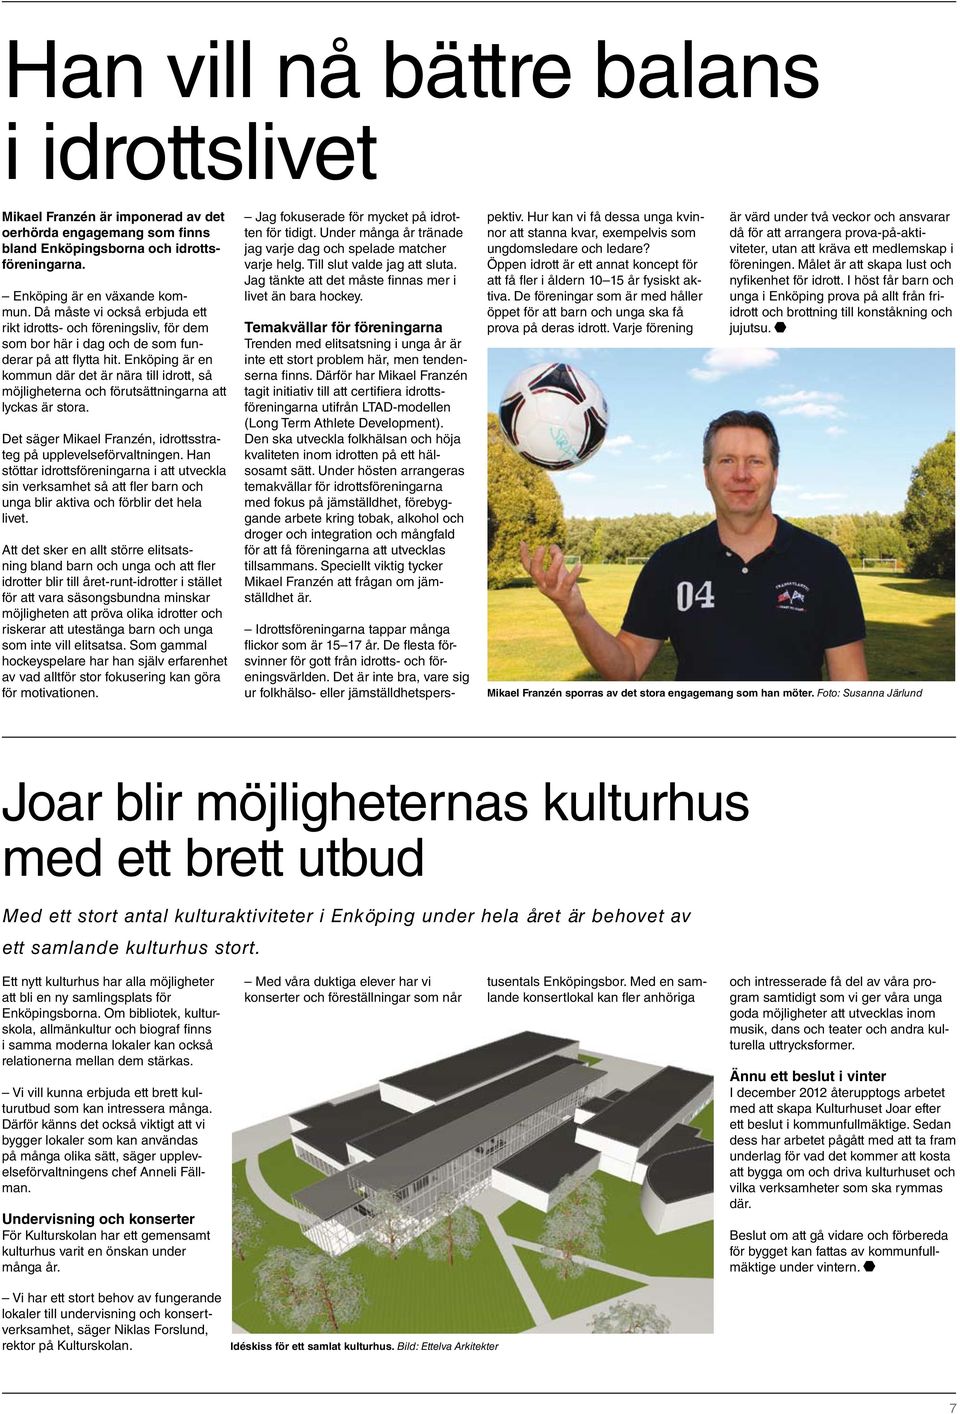 Enköping är en kommun där det är nära till idrott, så möjligheterna och förutsättningarna att lyckas är stora. Det säger Mikael Franzén, idrottsstrateg på upplevelseförvaltningen.